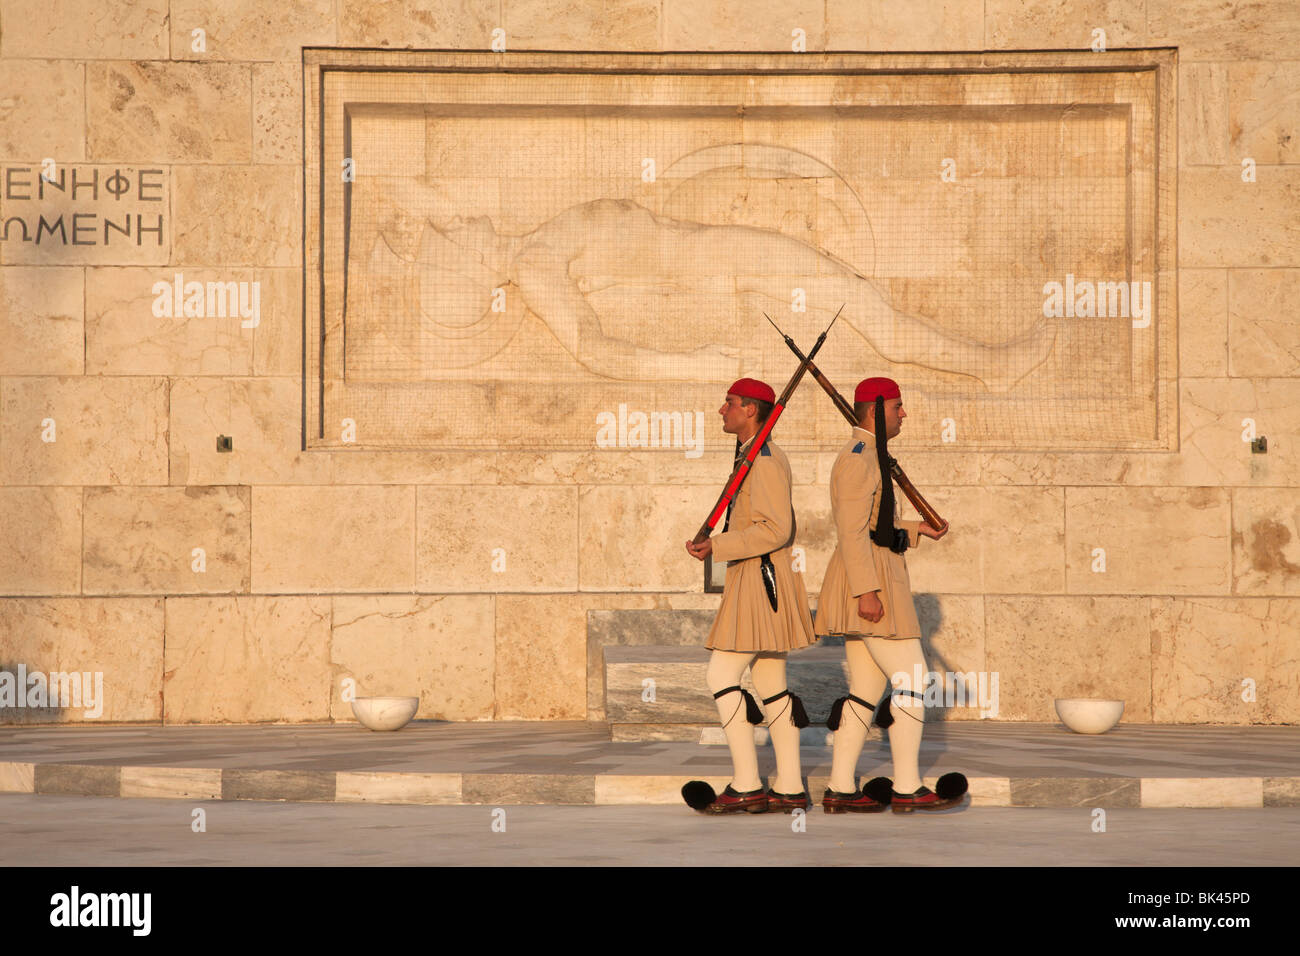 Les gardes présidentiels d'Evzones défendant la tombe du Soldat inconnu avec la sculpture de l'hoplite mourante au Parlement grec d'Athènes Banque D'Images